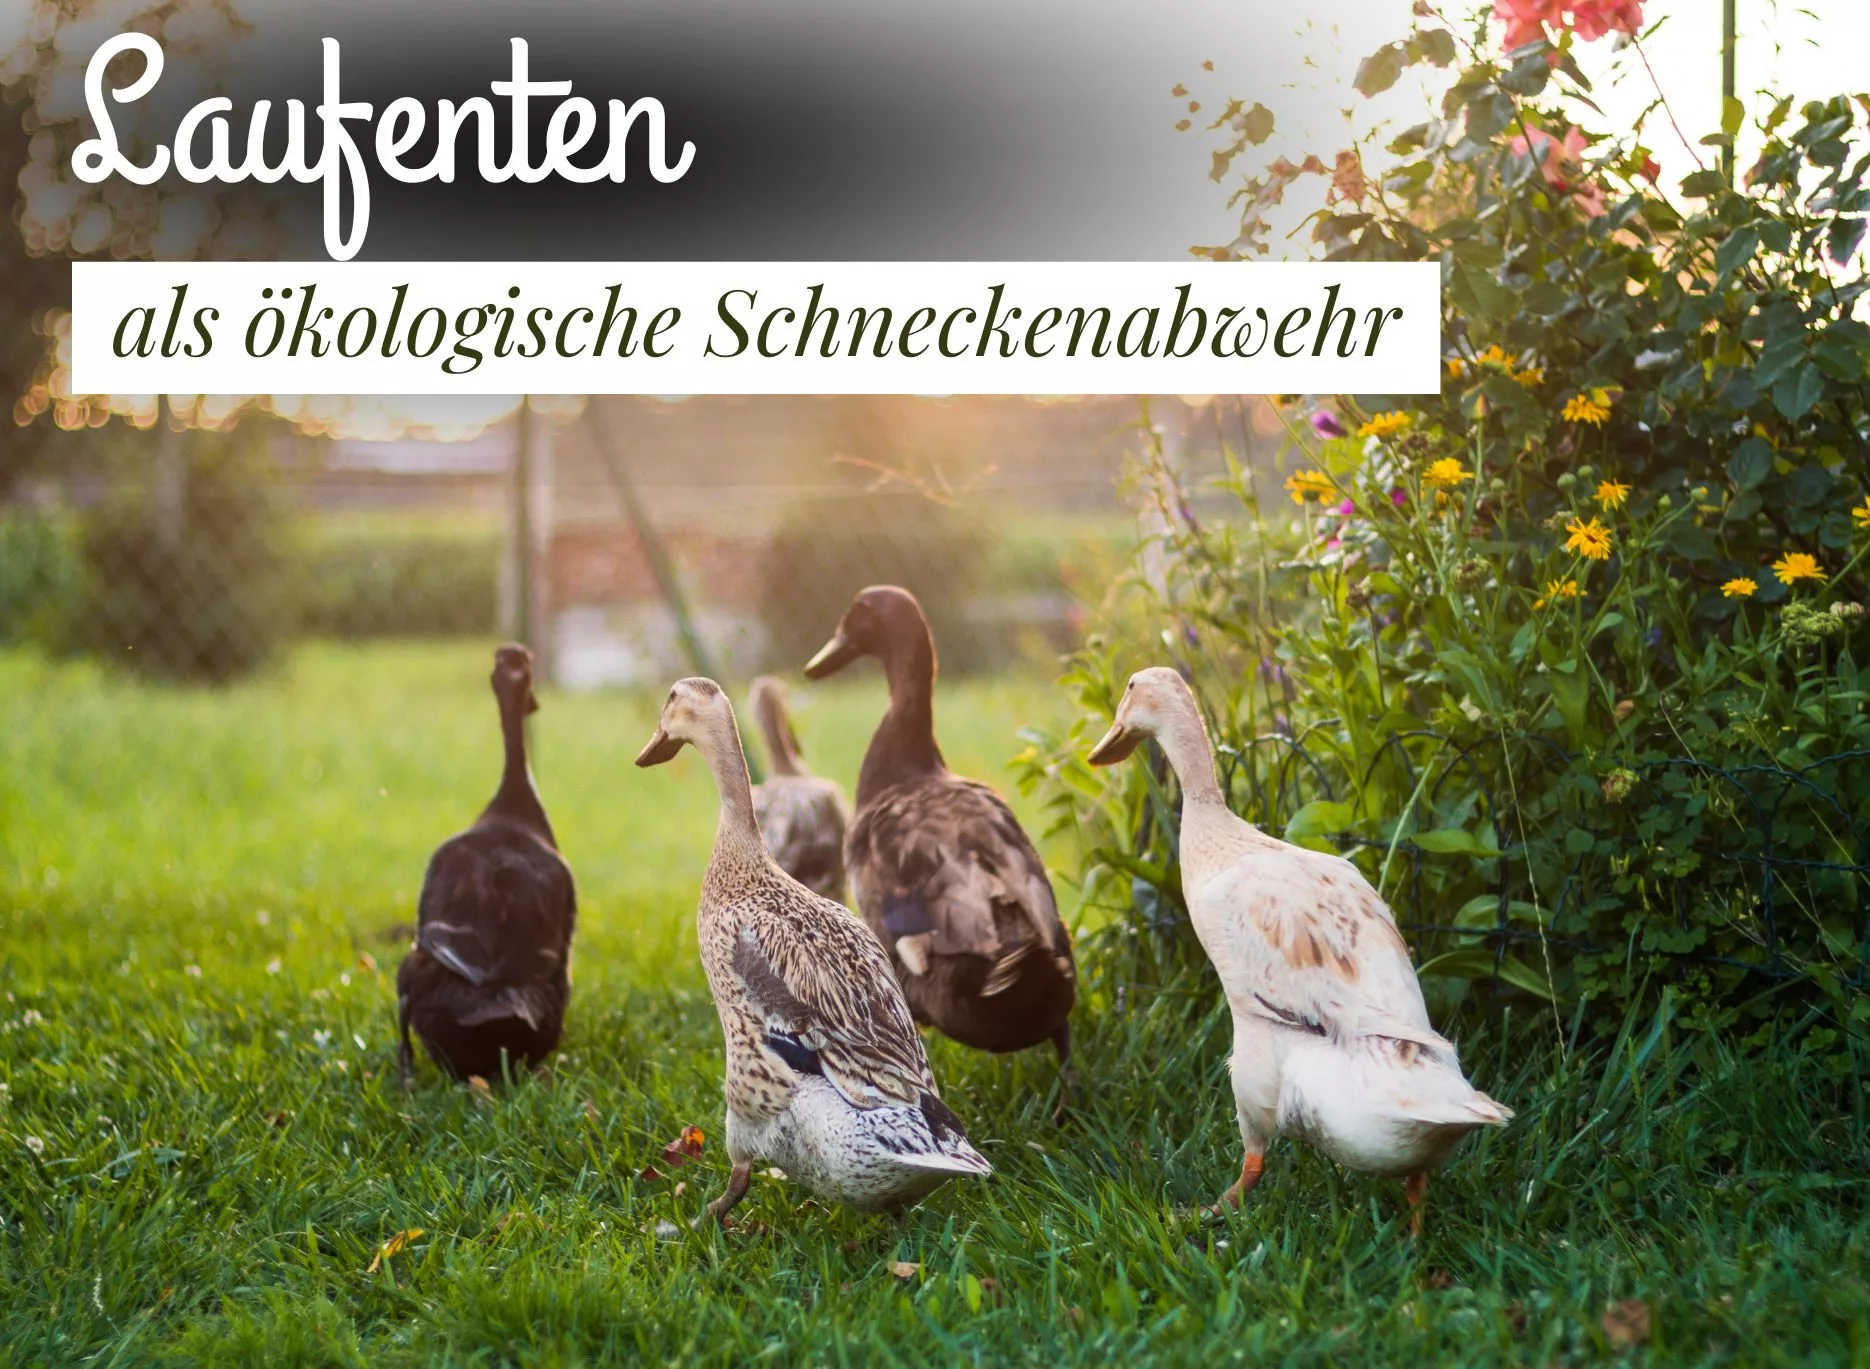 You are currently viewing Laufenten als ökologische Schneckenabwehr